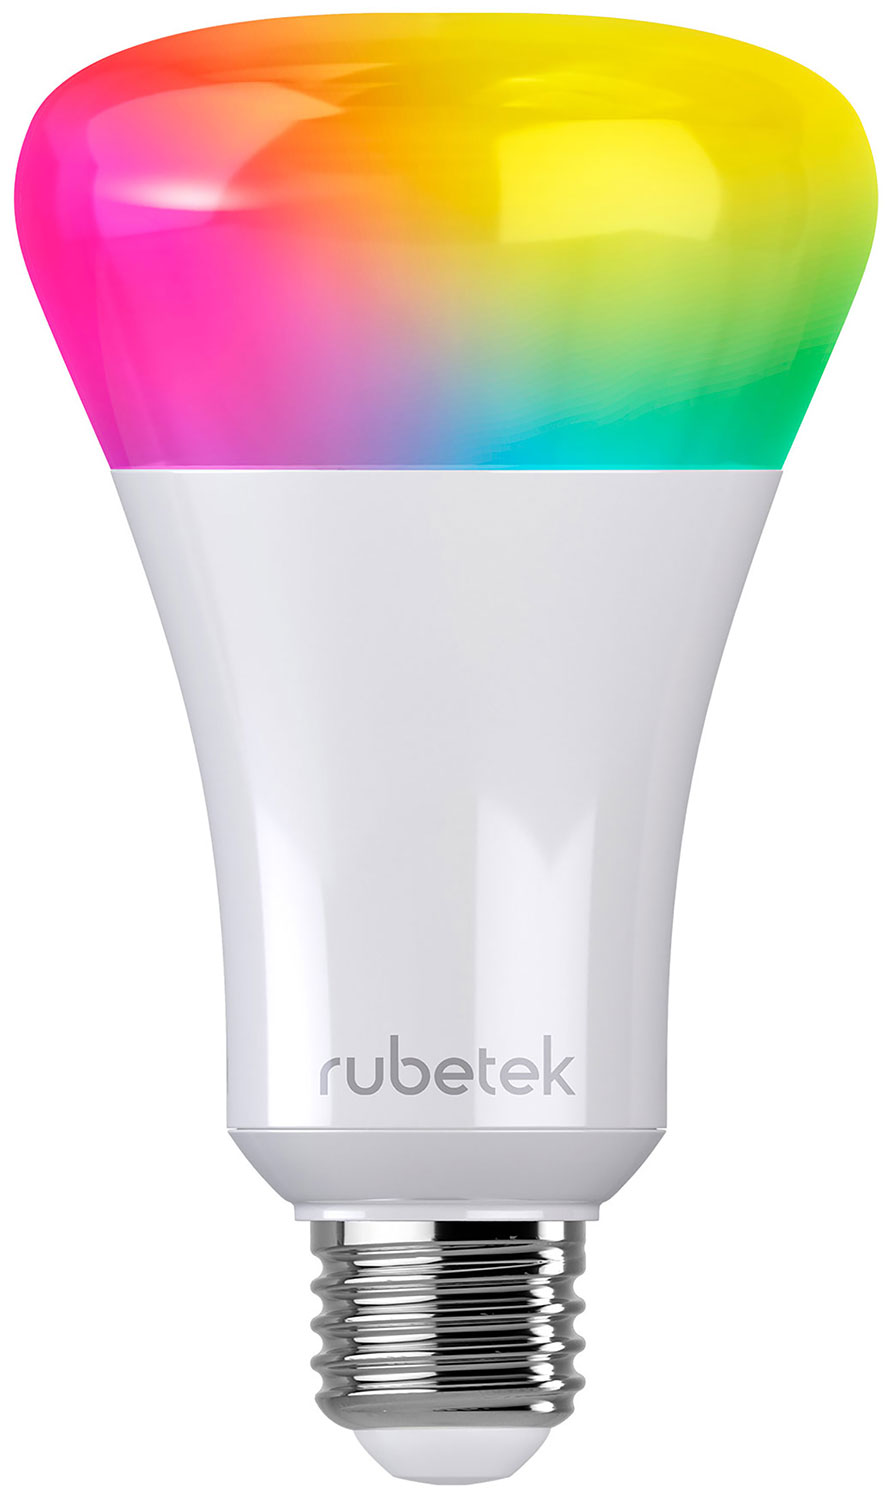 Wi-Fi лампа Rubetek RL-3103 цена и фото